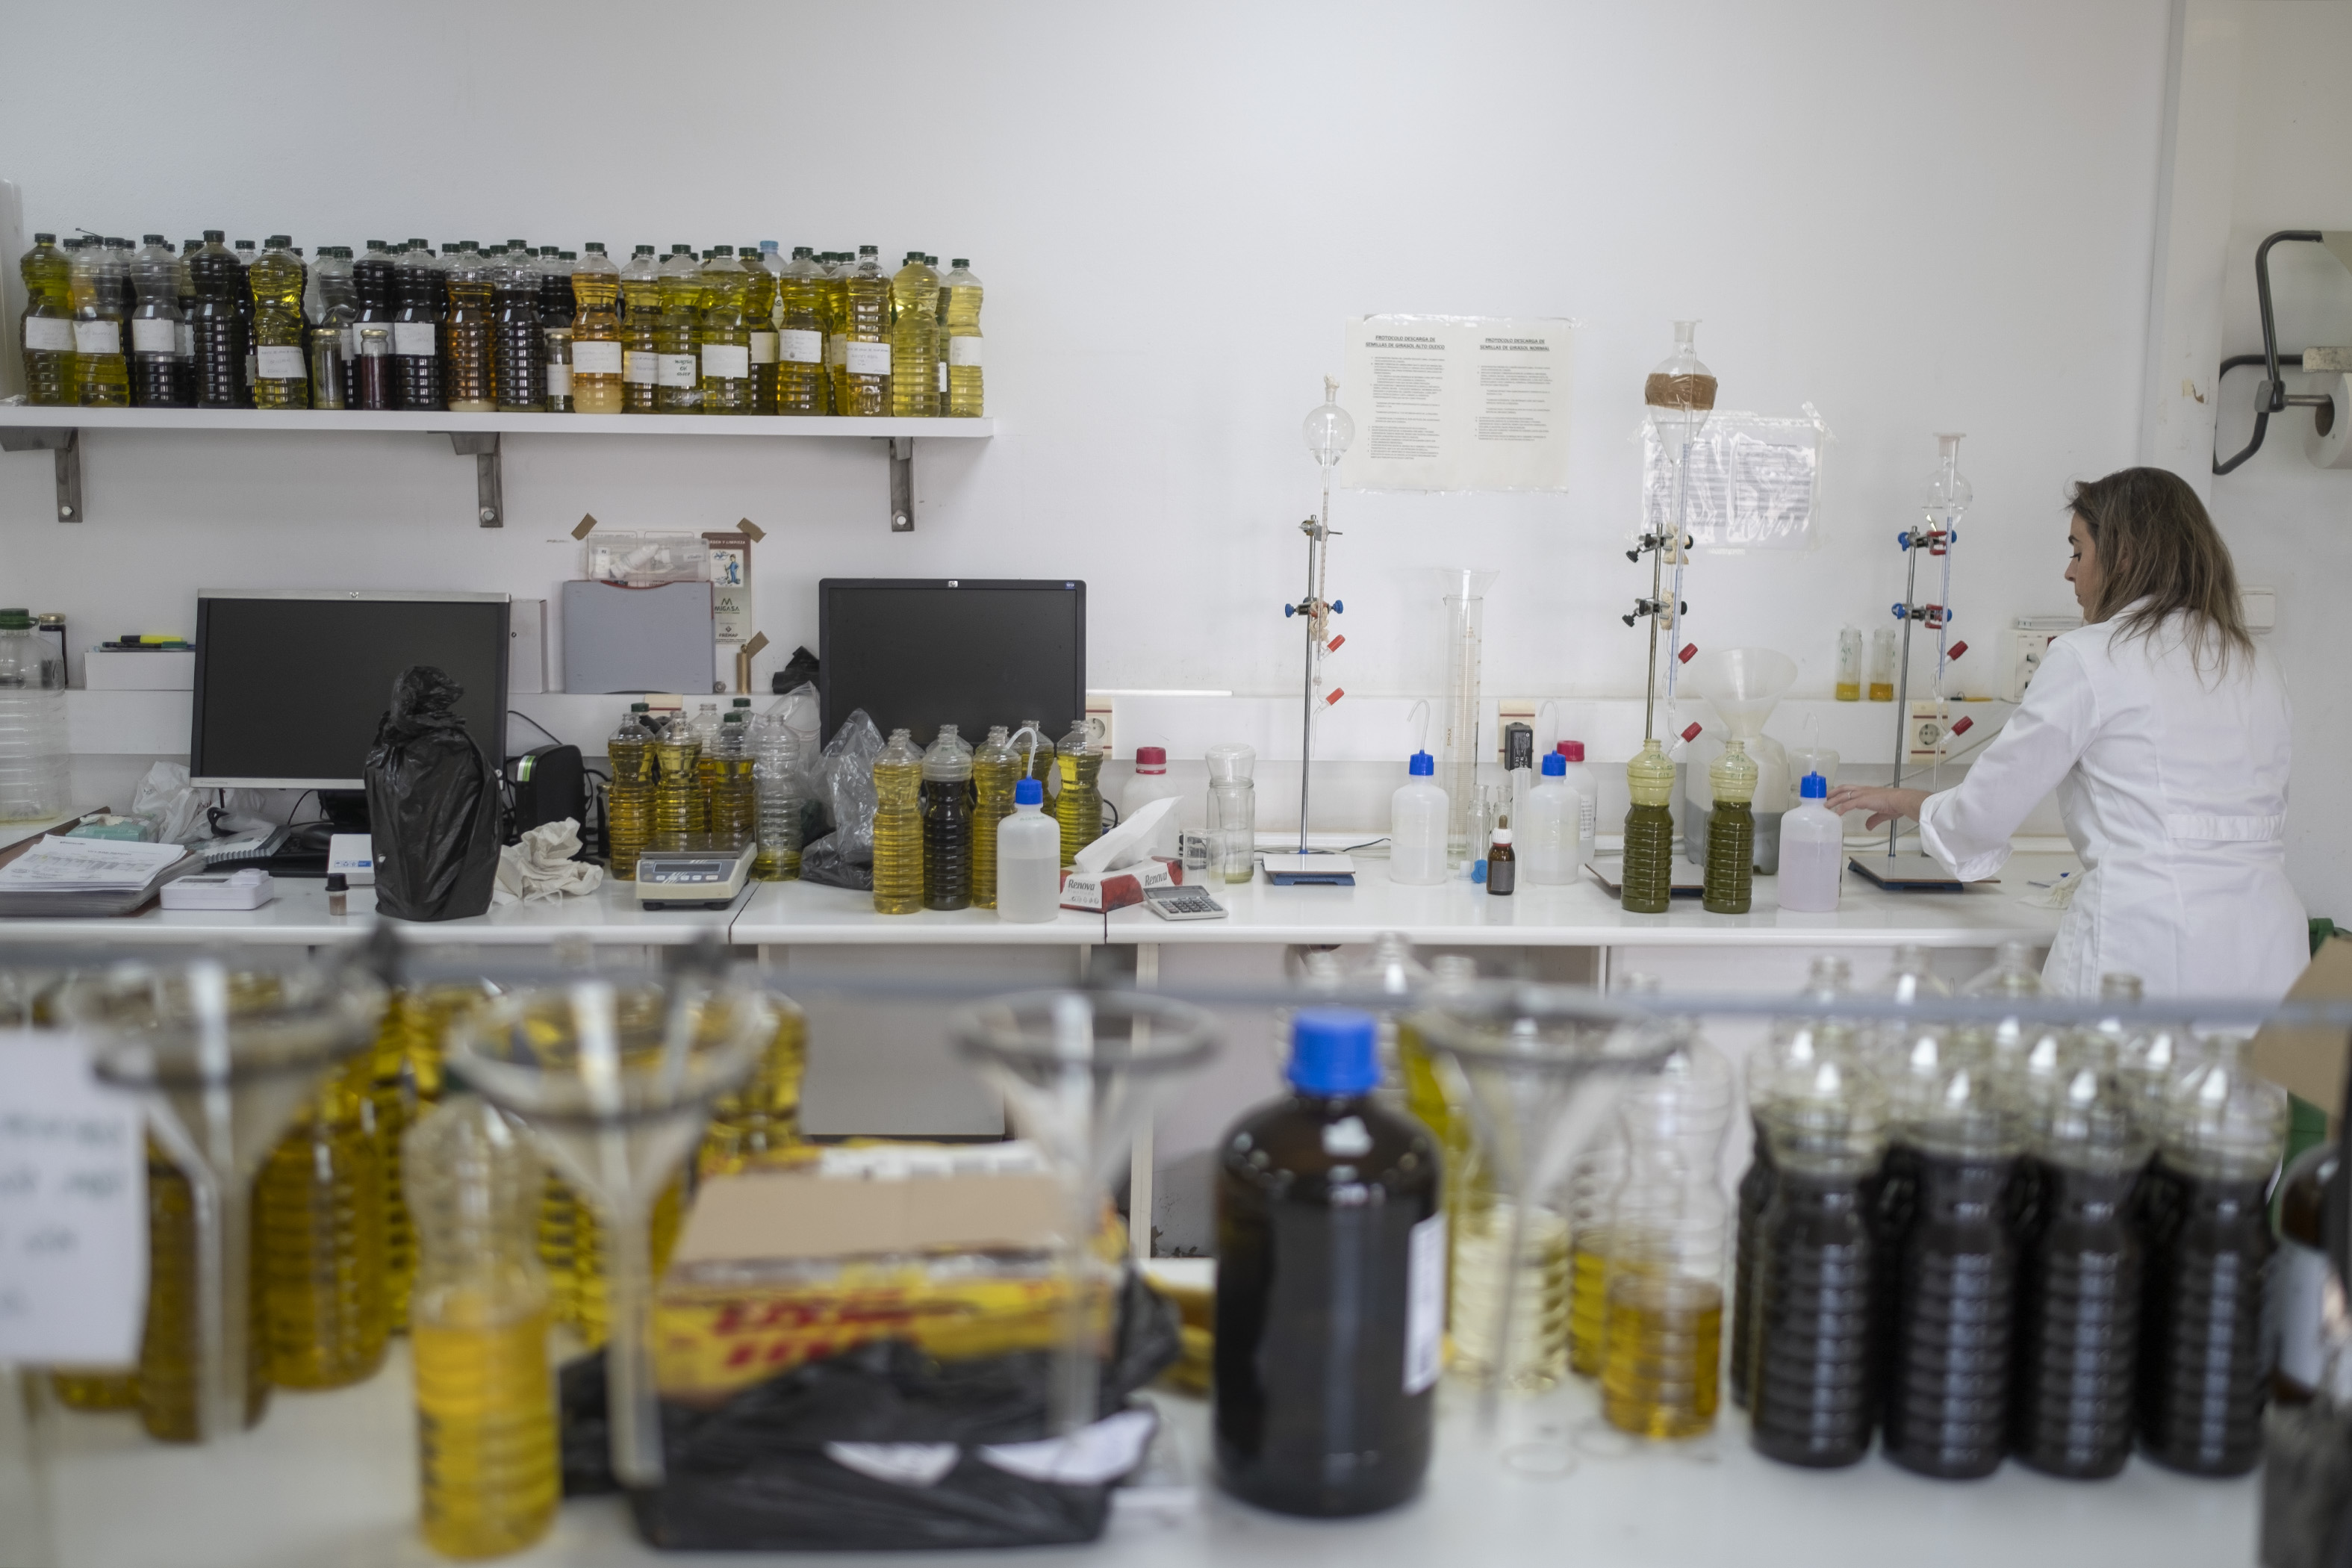 Laboratorios de Prodosa para el análisis de las muestras de aceite de orujo de oliva obtenidas en las distintas fases de elaboración.